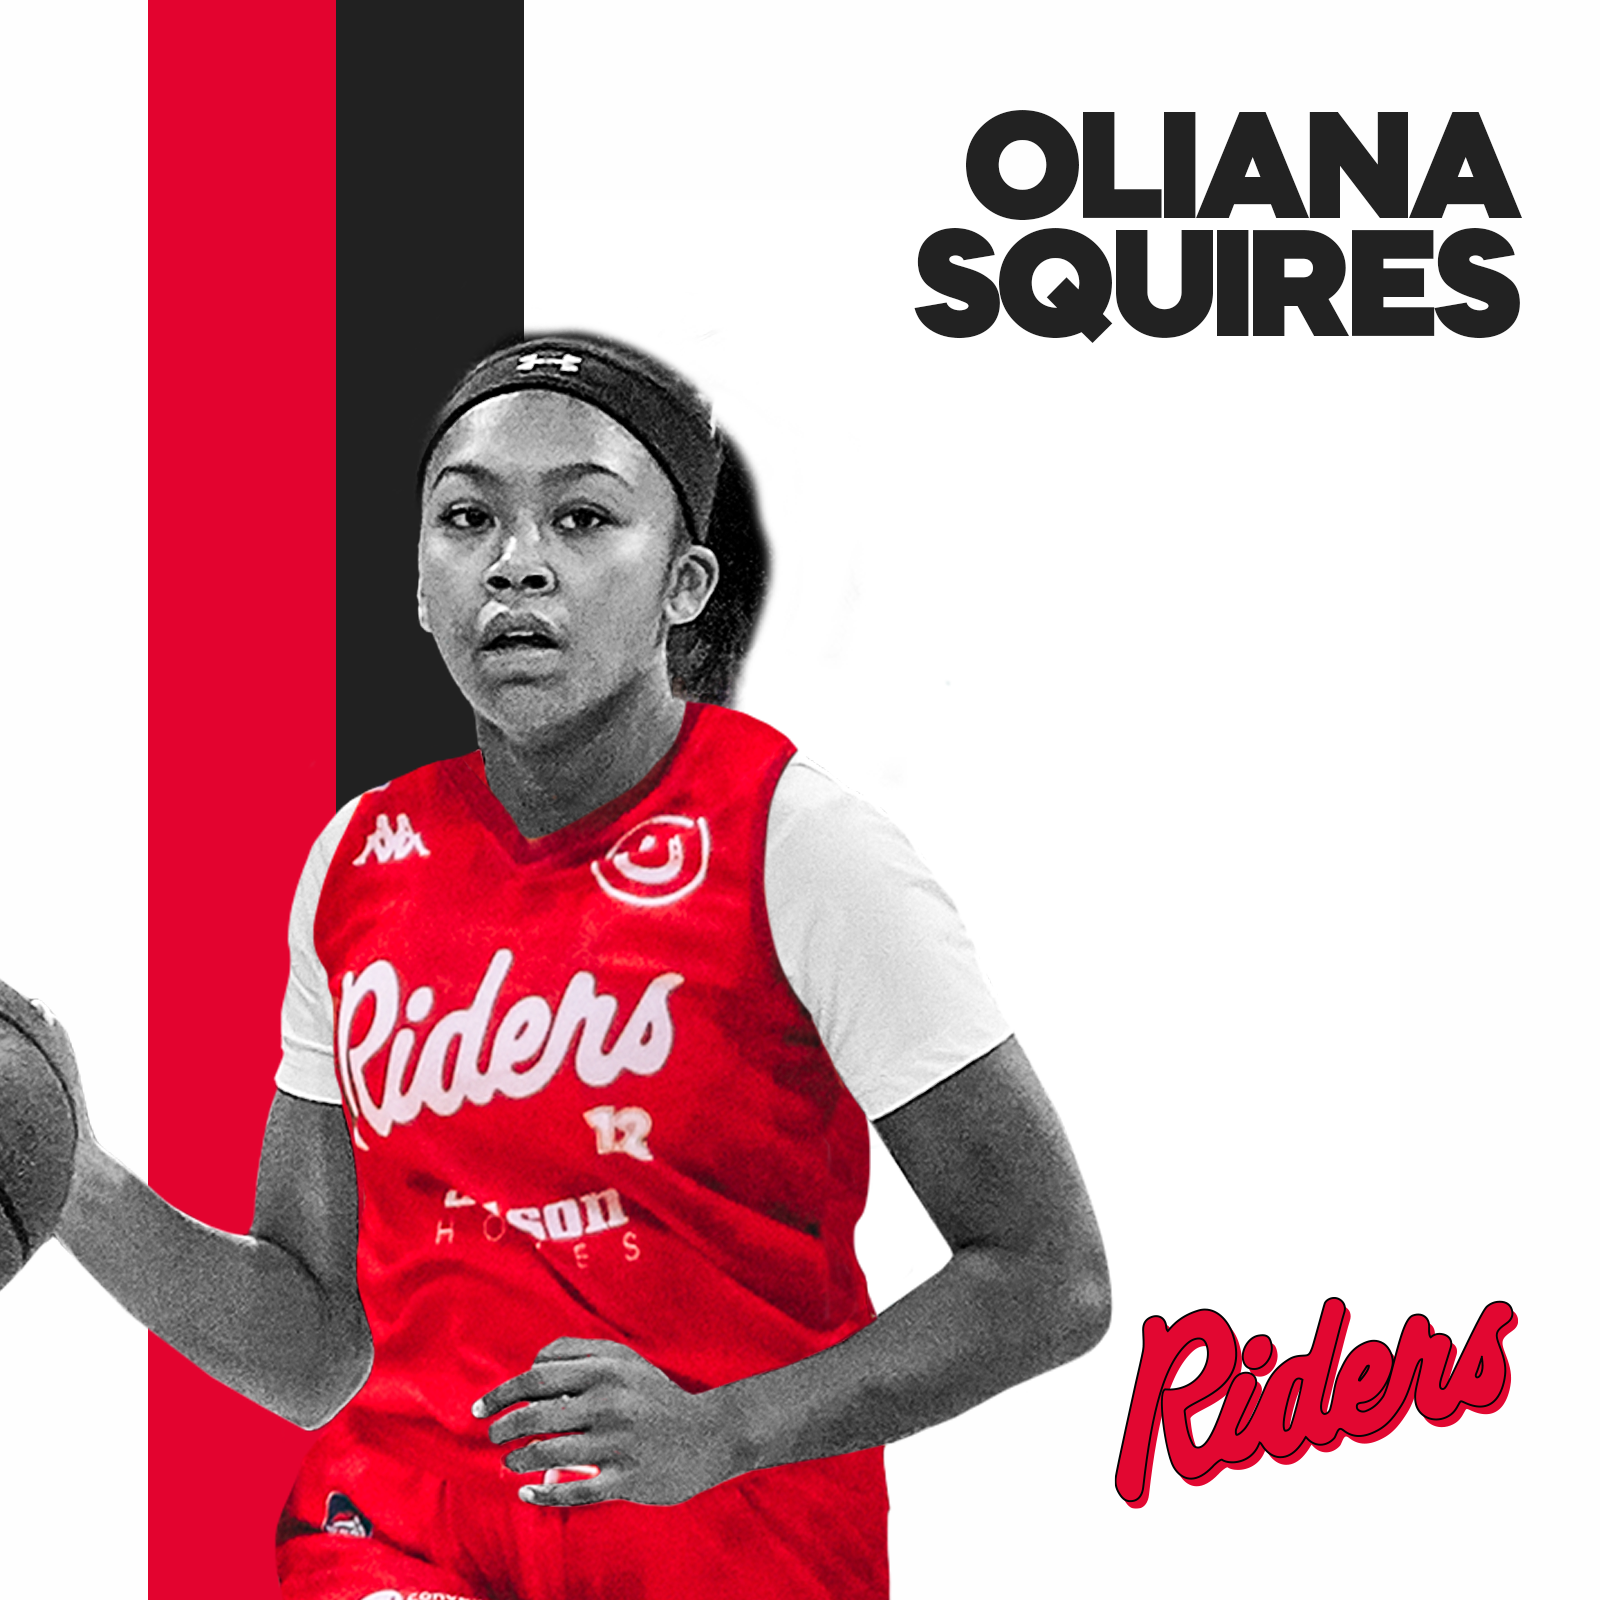 Riders Acquire Oliana Squires